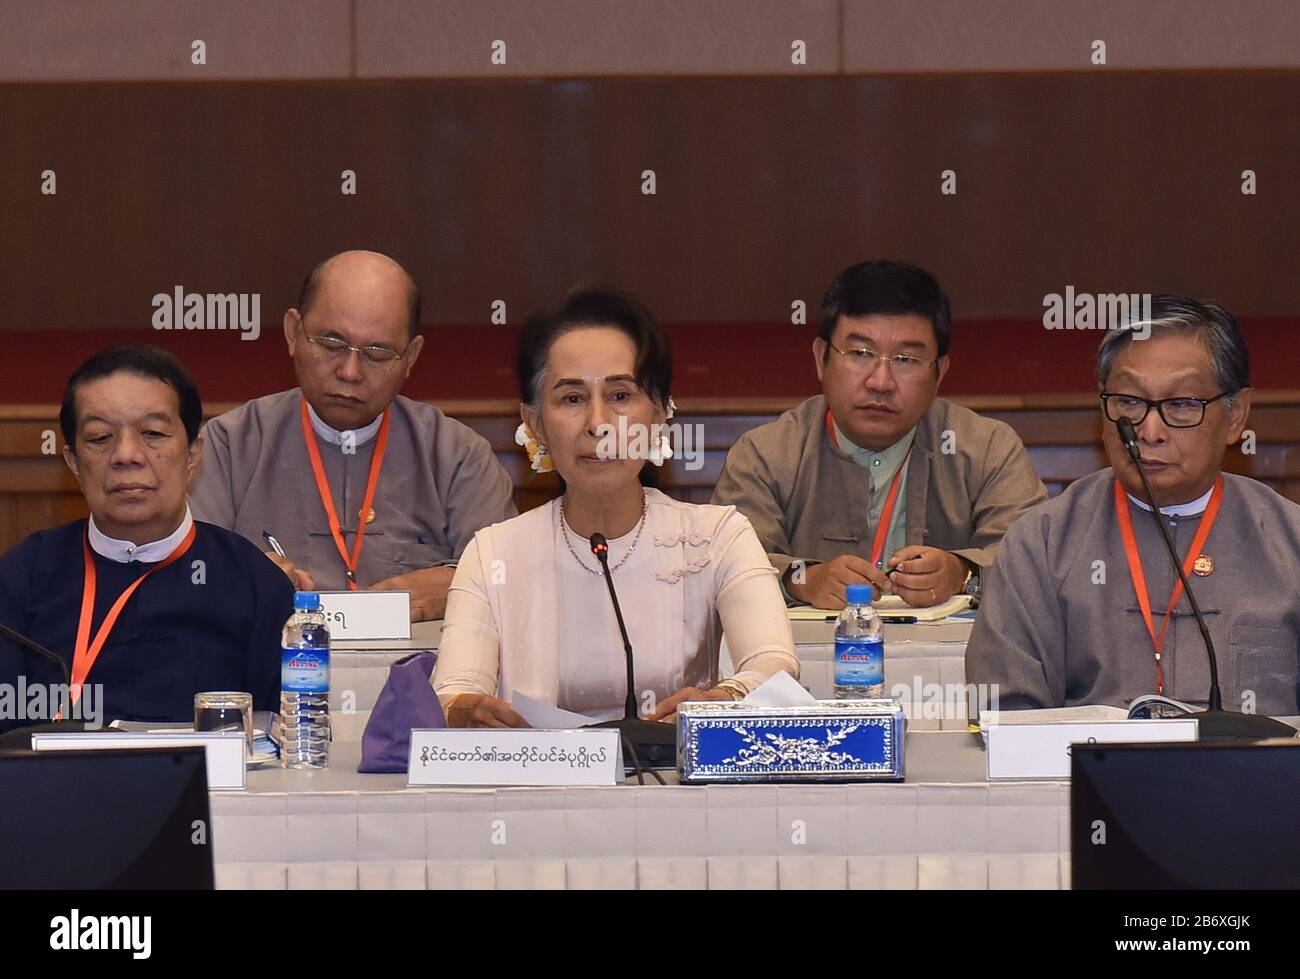 Nay Pyi Taw, Myanmar. 12 mars 2020. La Conseillère d'État du Myanmar Aung San Suu Kyi (C) prend la parole à la 18ème réunion du Comité conjoint de L'Union Pour Le Dialogue de paix (UPDJC) à Nay Pyi Taw, au Myanmar, le 12 mars 2020. La 18ème réunion du Comité mixte du Dialogue de paix de l'Union du Myanmar (UPDJC) s'est tenue jeudi à Nay Pyi Taw. Crédit: Soe Que Lynn/Xinhua/Alay Live News Banque D'Images